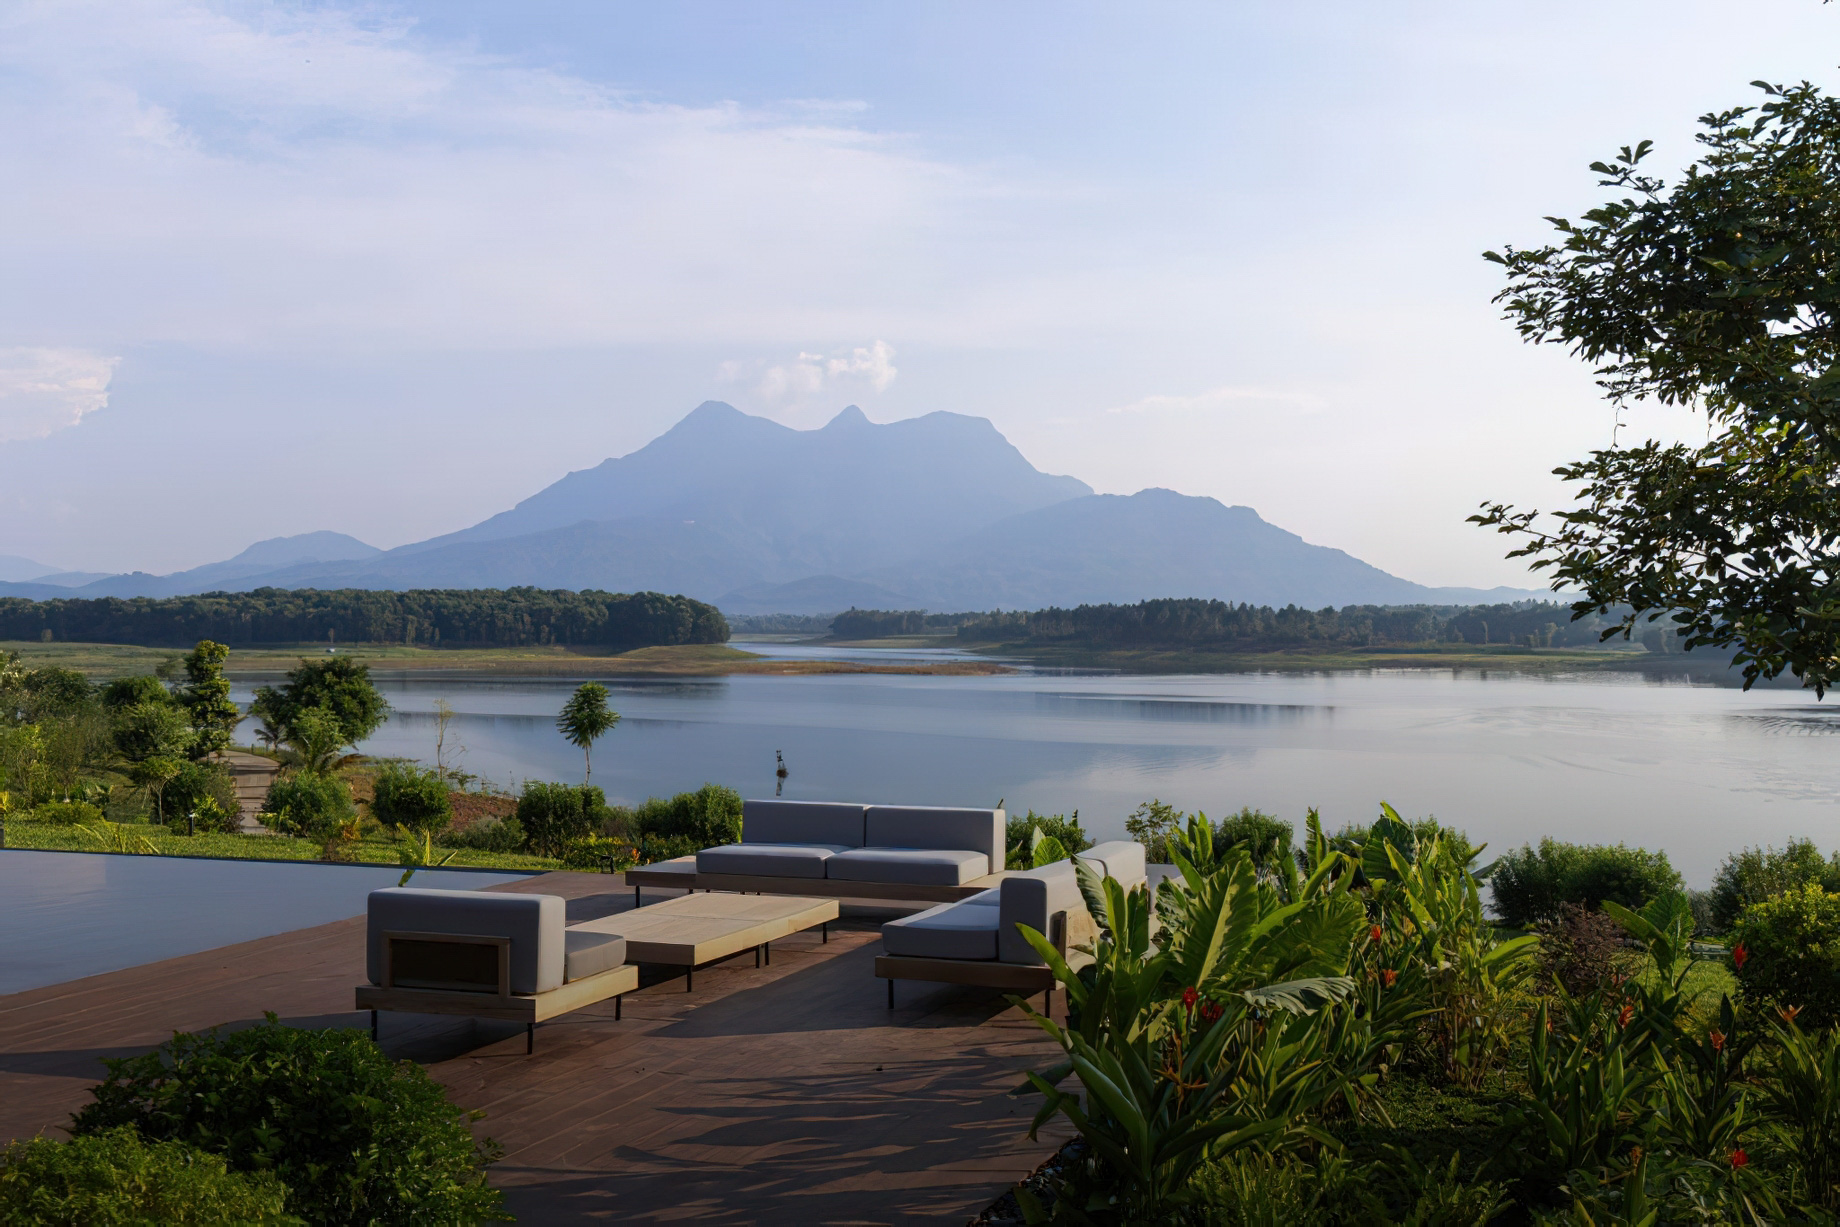 SuoiHai Lake Tan Vien Mountain View Villa - Ho Suoi Hai, Ba Vi, Hanoi, Vietnam